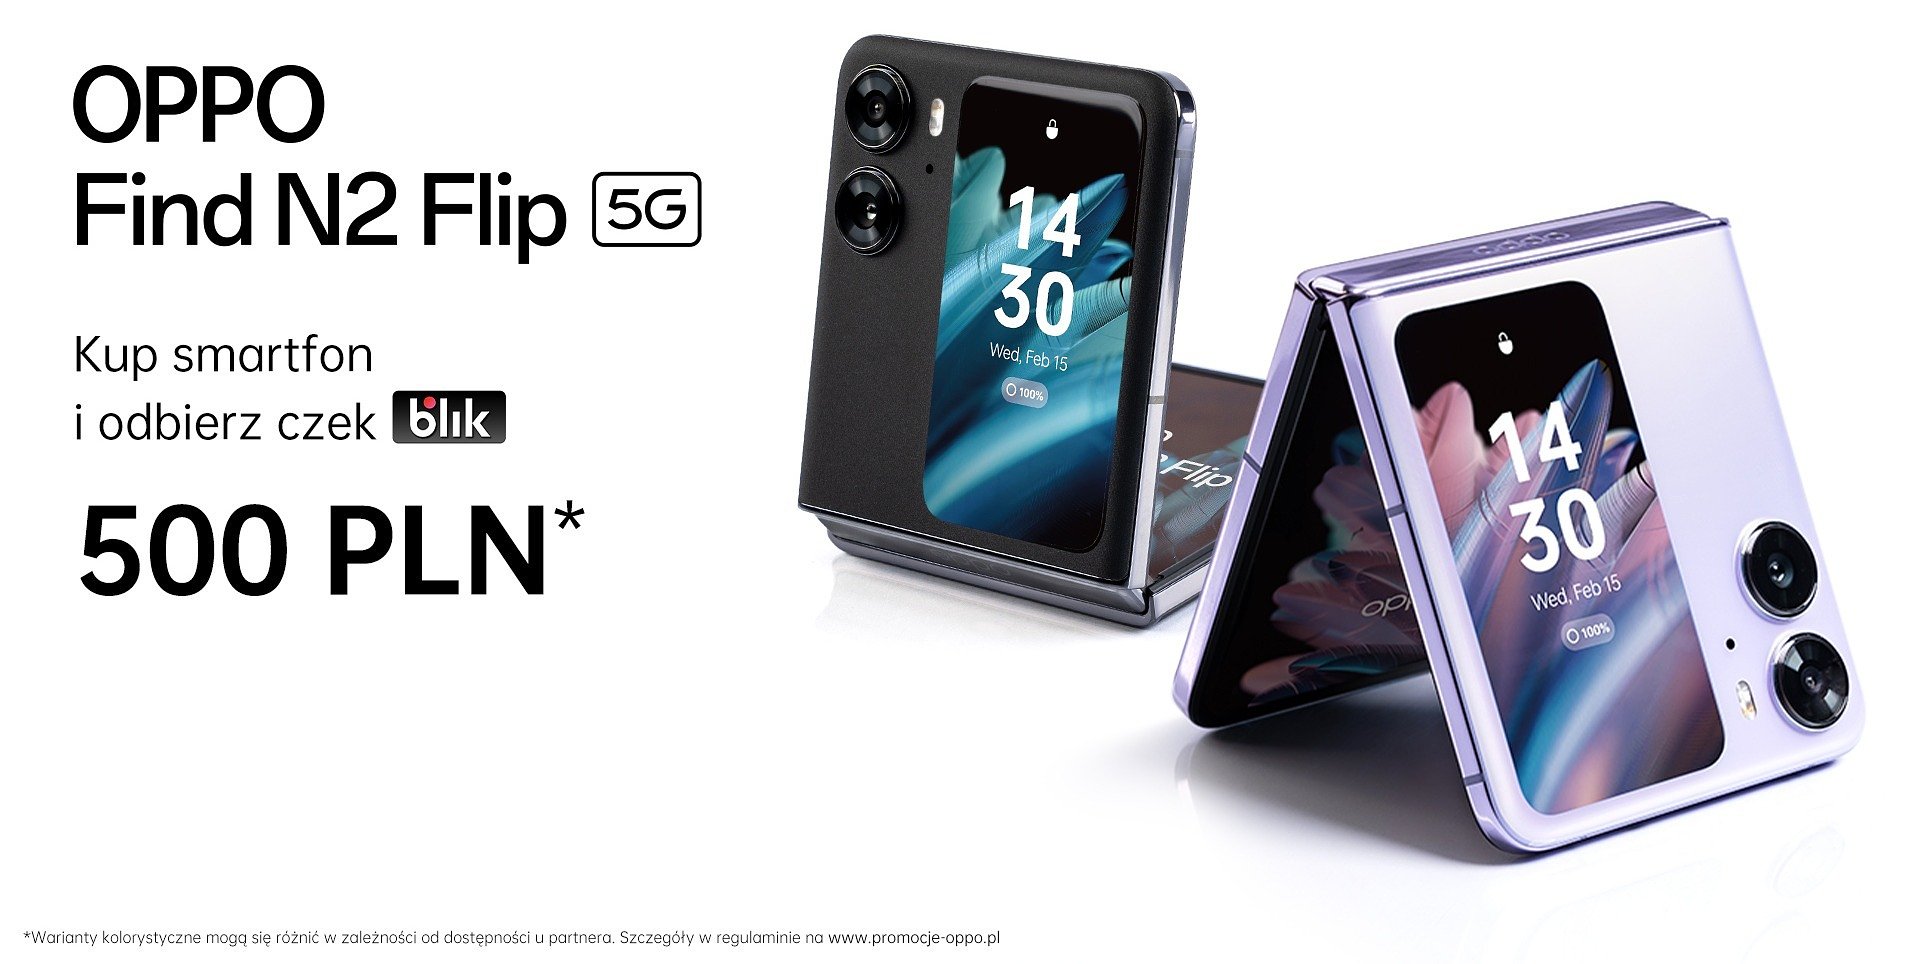 OPPO kontynuuje promocję cashback – kup smartfon OPPO Find N2 Flip i odbierz czek BLIK o wartości 500 zł